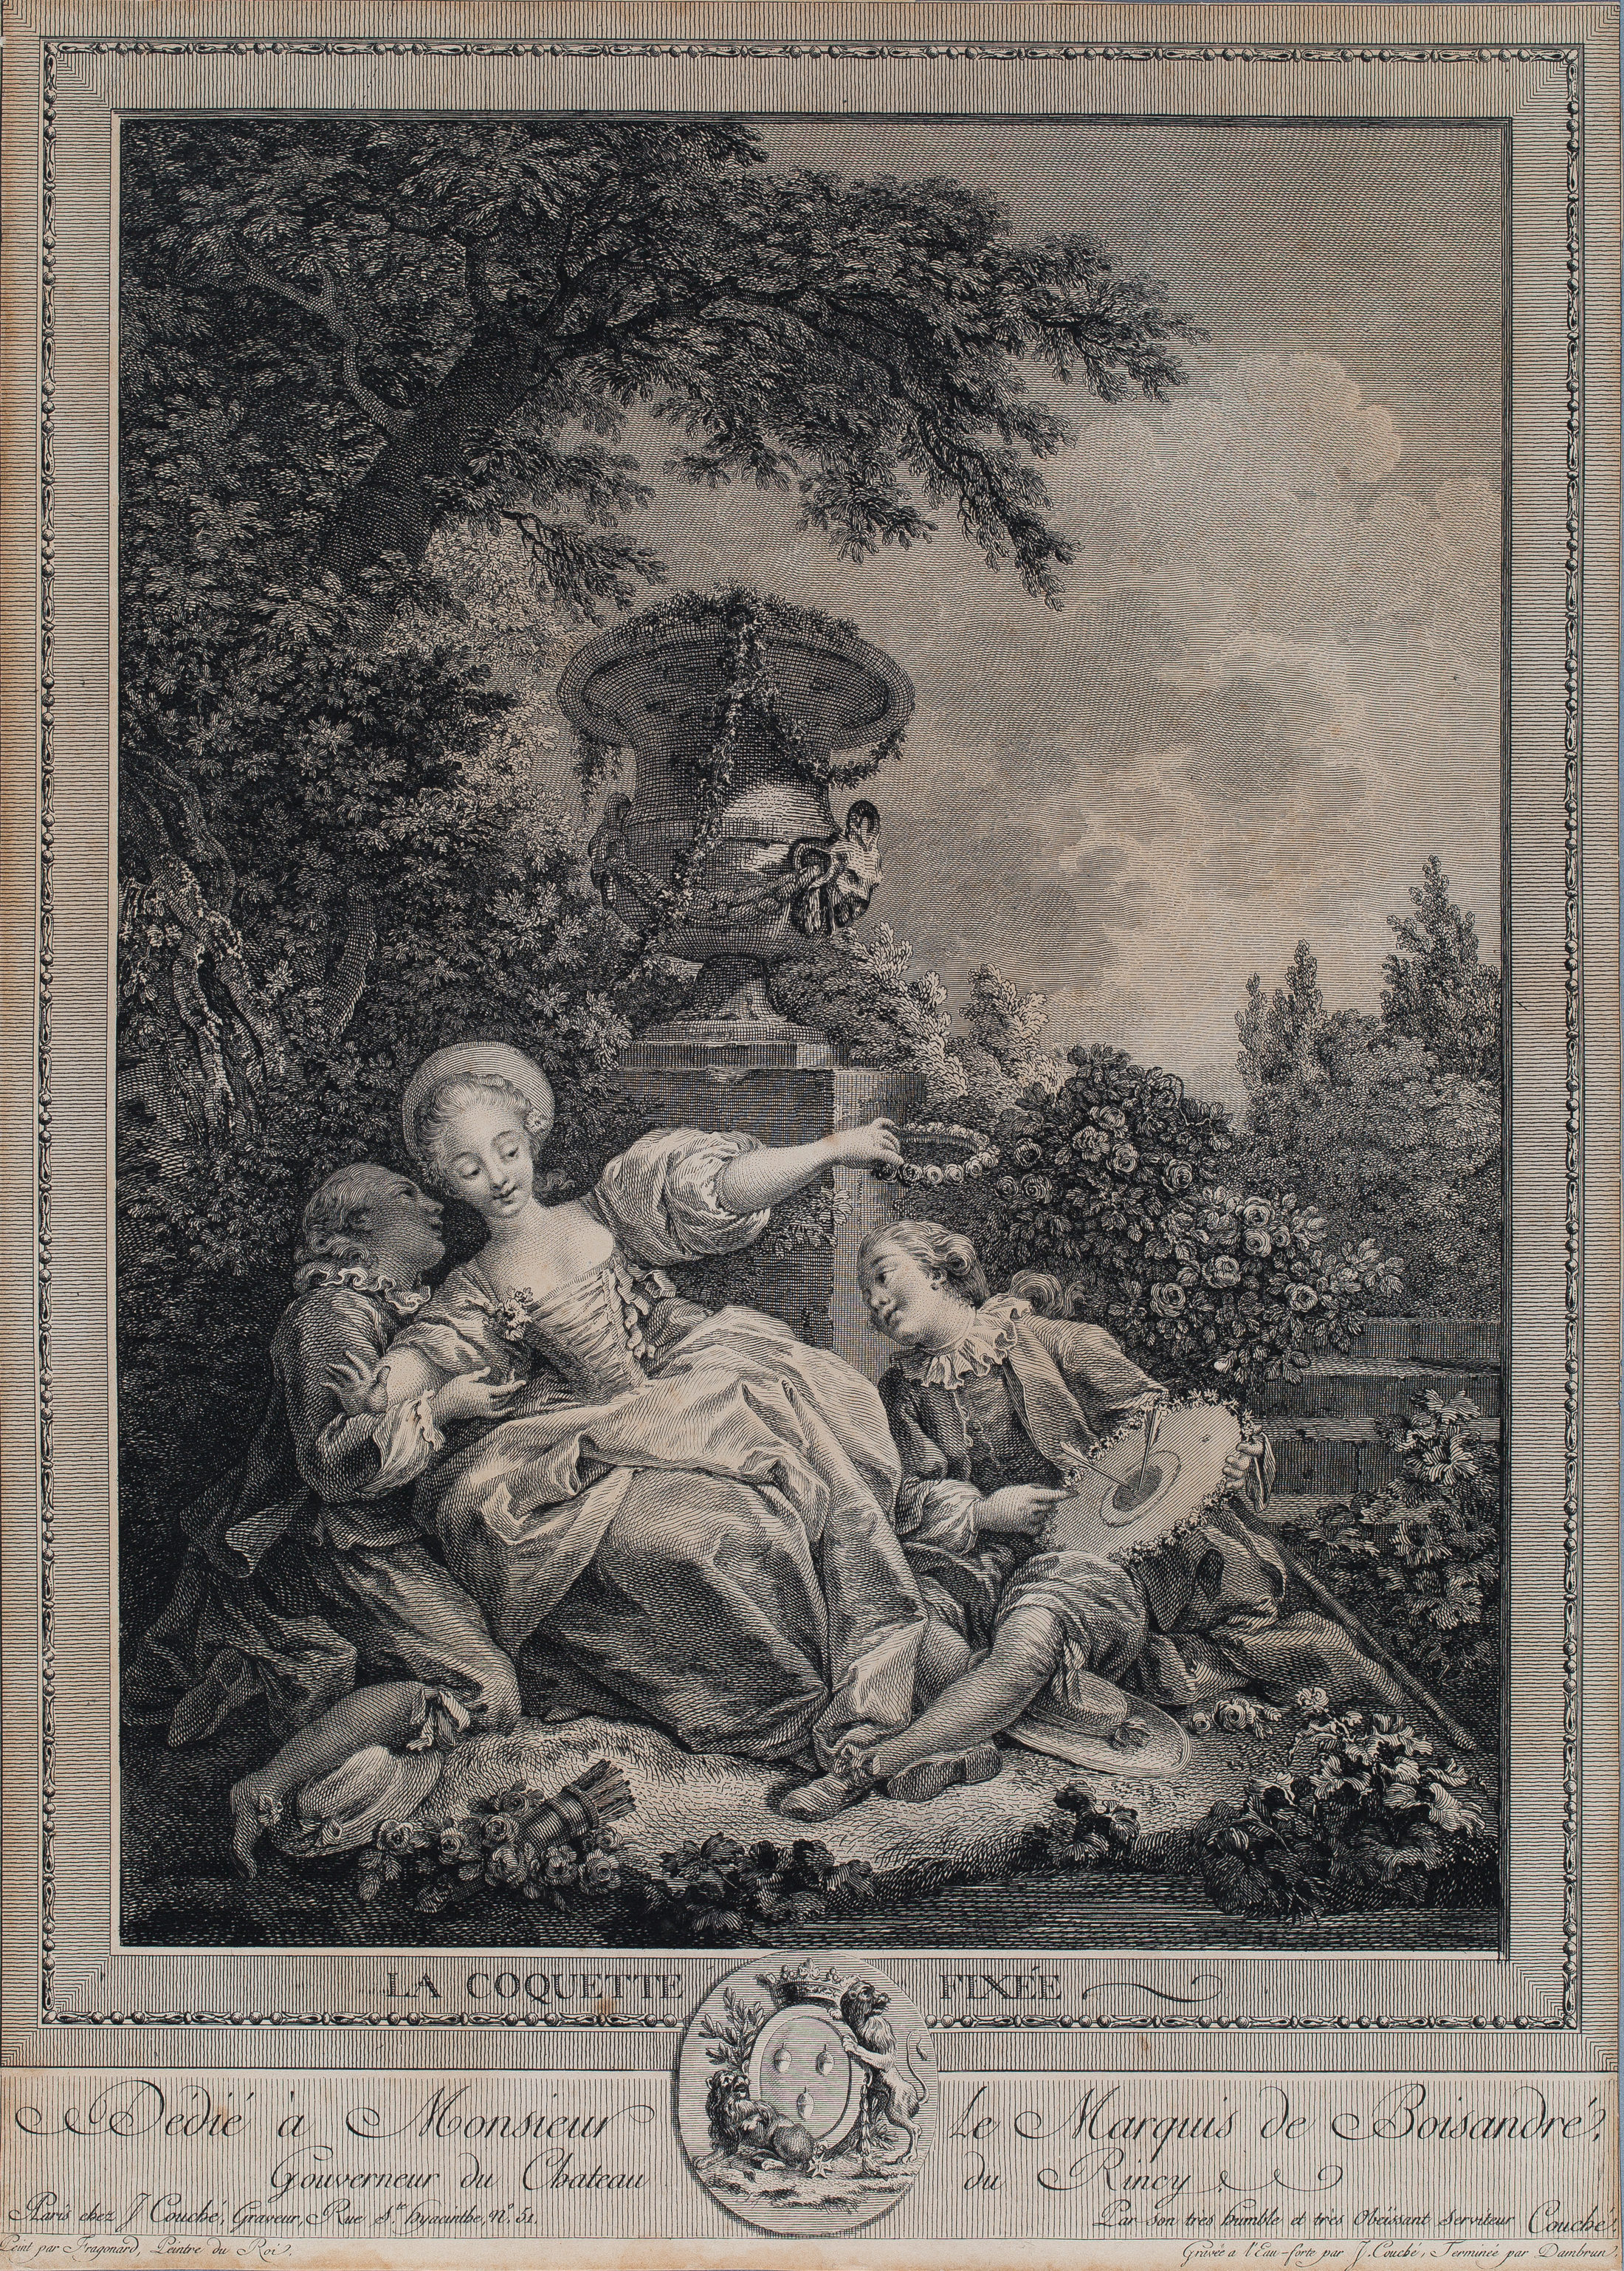 Jacques Couché nach Jean-Honoré Fragonard, La Coquette fixée, 2. Hälfte 18. Jh., Kupferstich und Radierung (Wird bei Klick vergrößert)